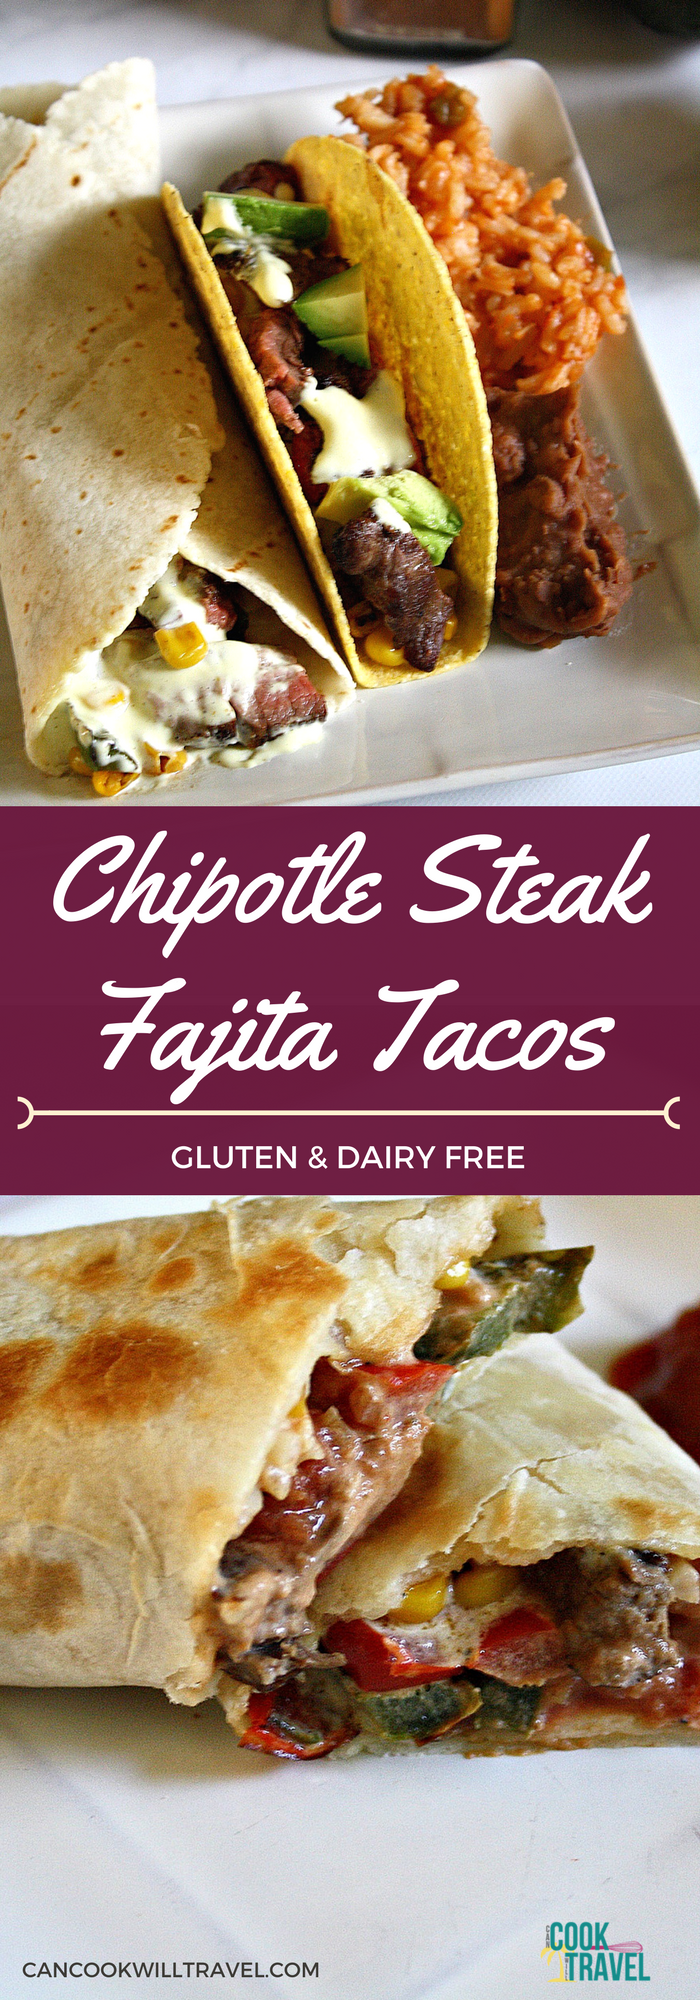 Chipotle Steak Fajita Tacos_Collage1